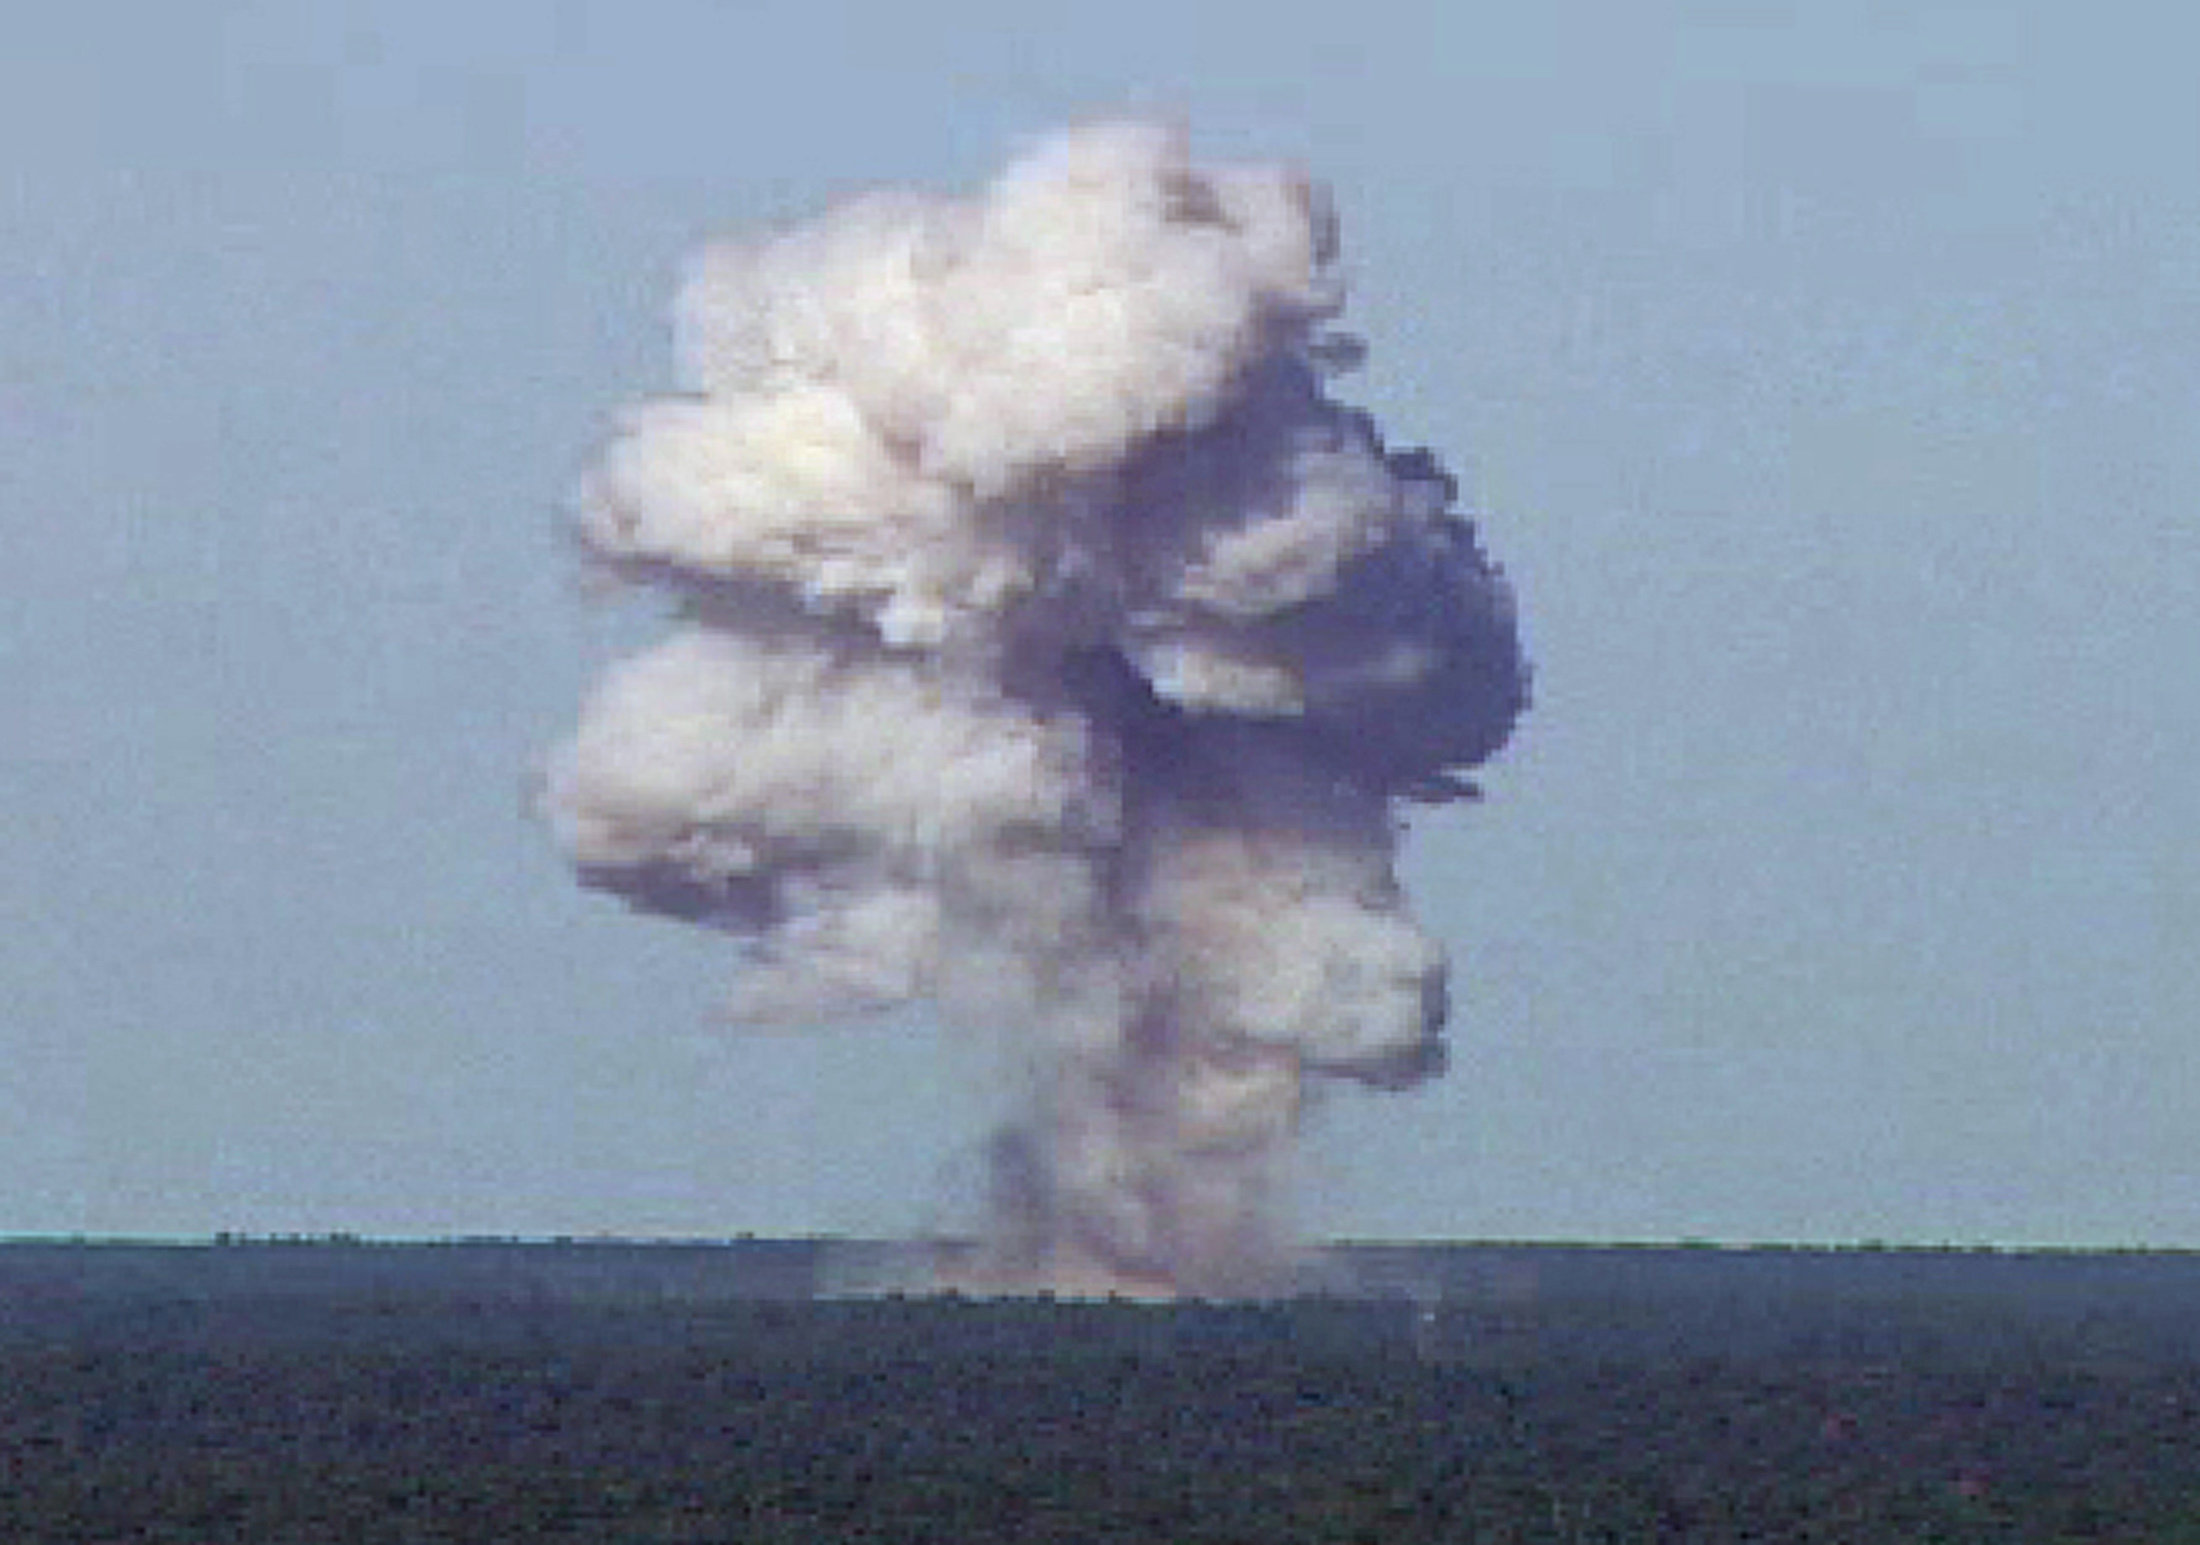 La bomba GBU-43 está considerada como una de las armas más potentes del mundo y EE.UU. la acaba de utilizar contra el Estado Islámico